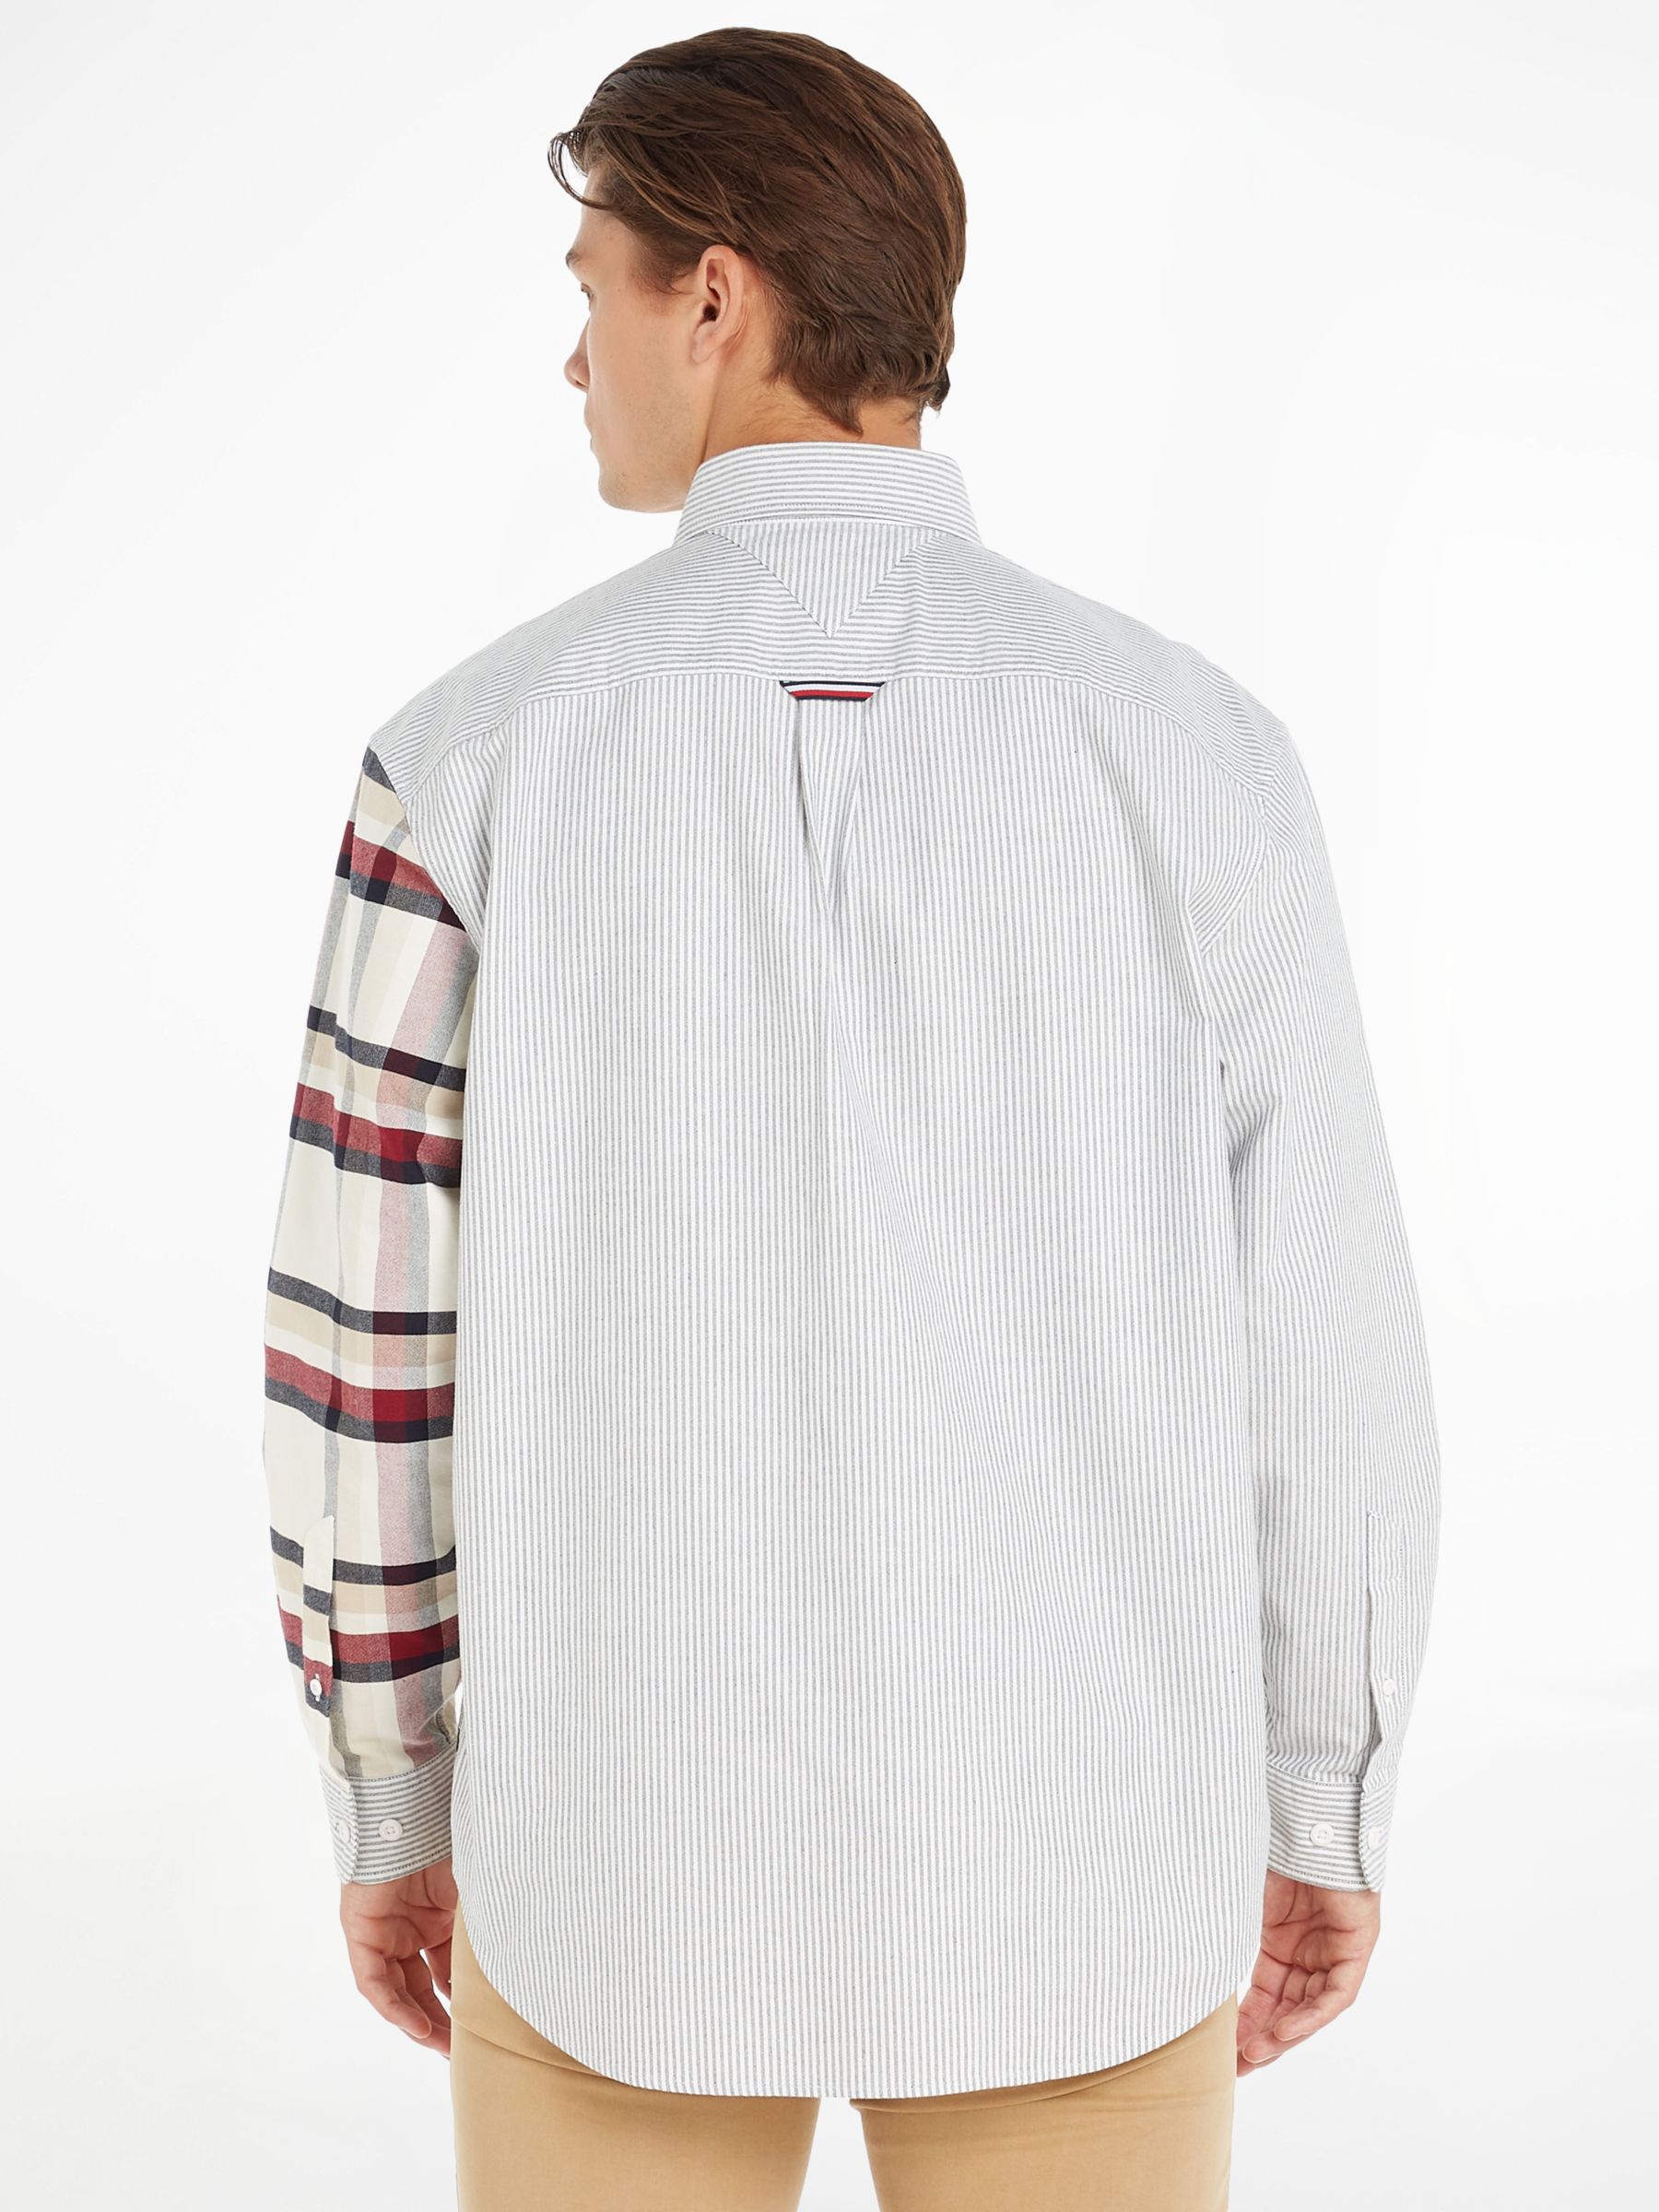 Tommy Hilfiger Check Blocking Shirt, Ivory/Multi, XS